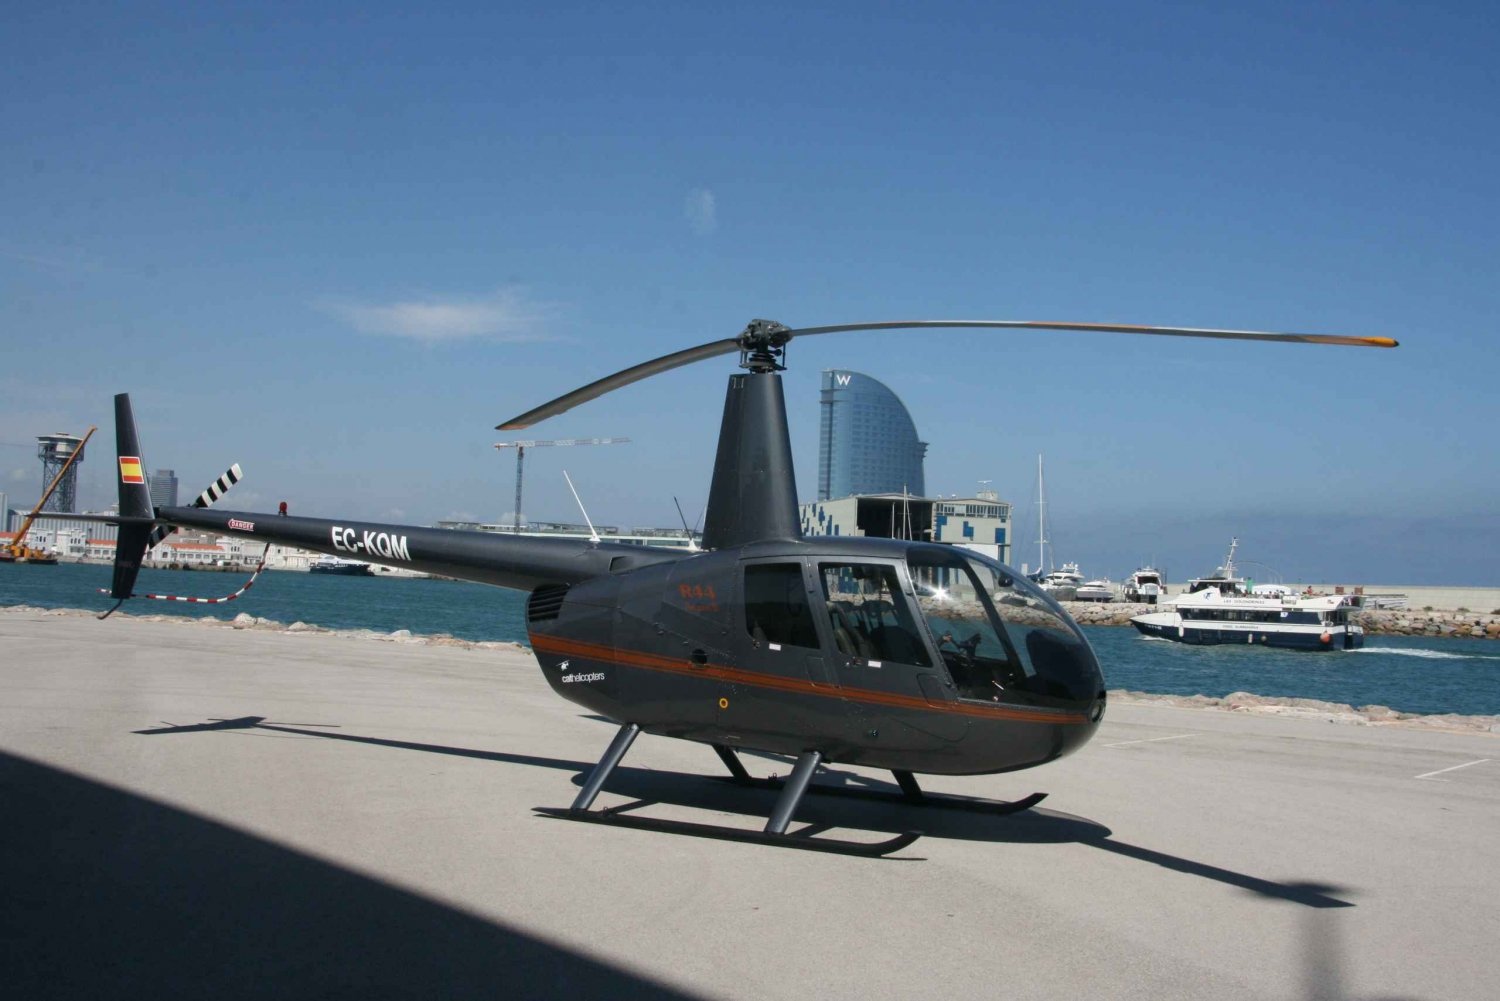 Barcelona: Voo panorâmico de helicóptero